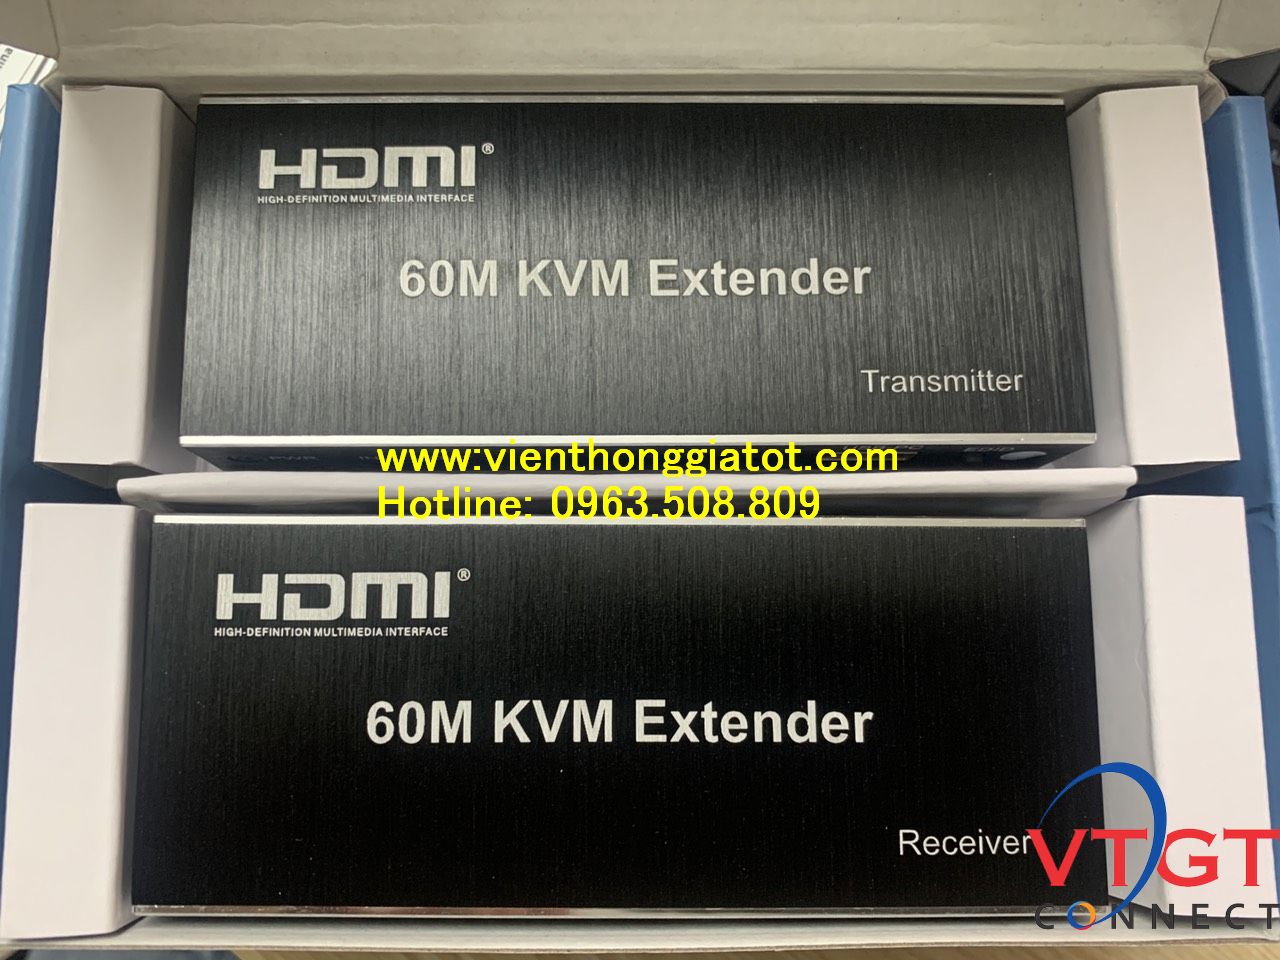 HDMI KVM 60M Extender